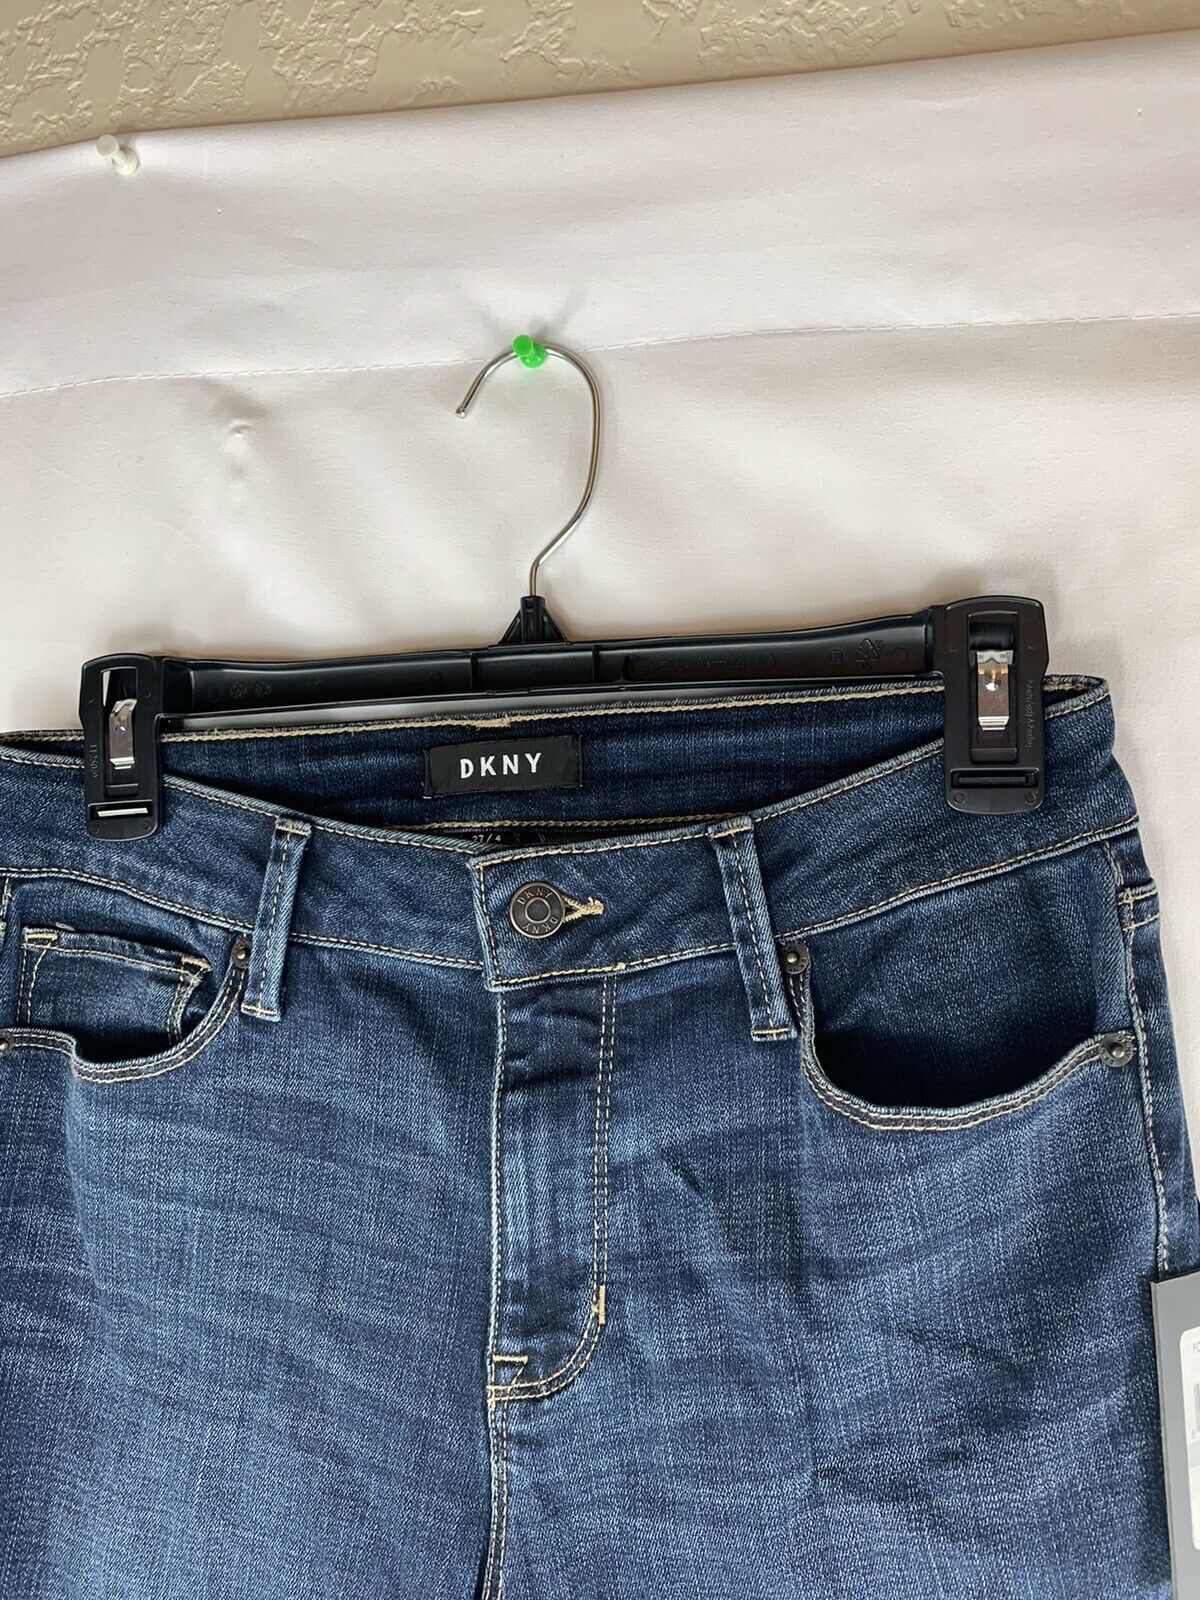 DKNY Jeans 27